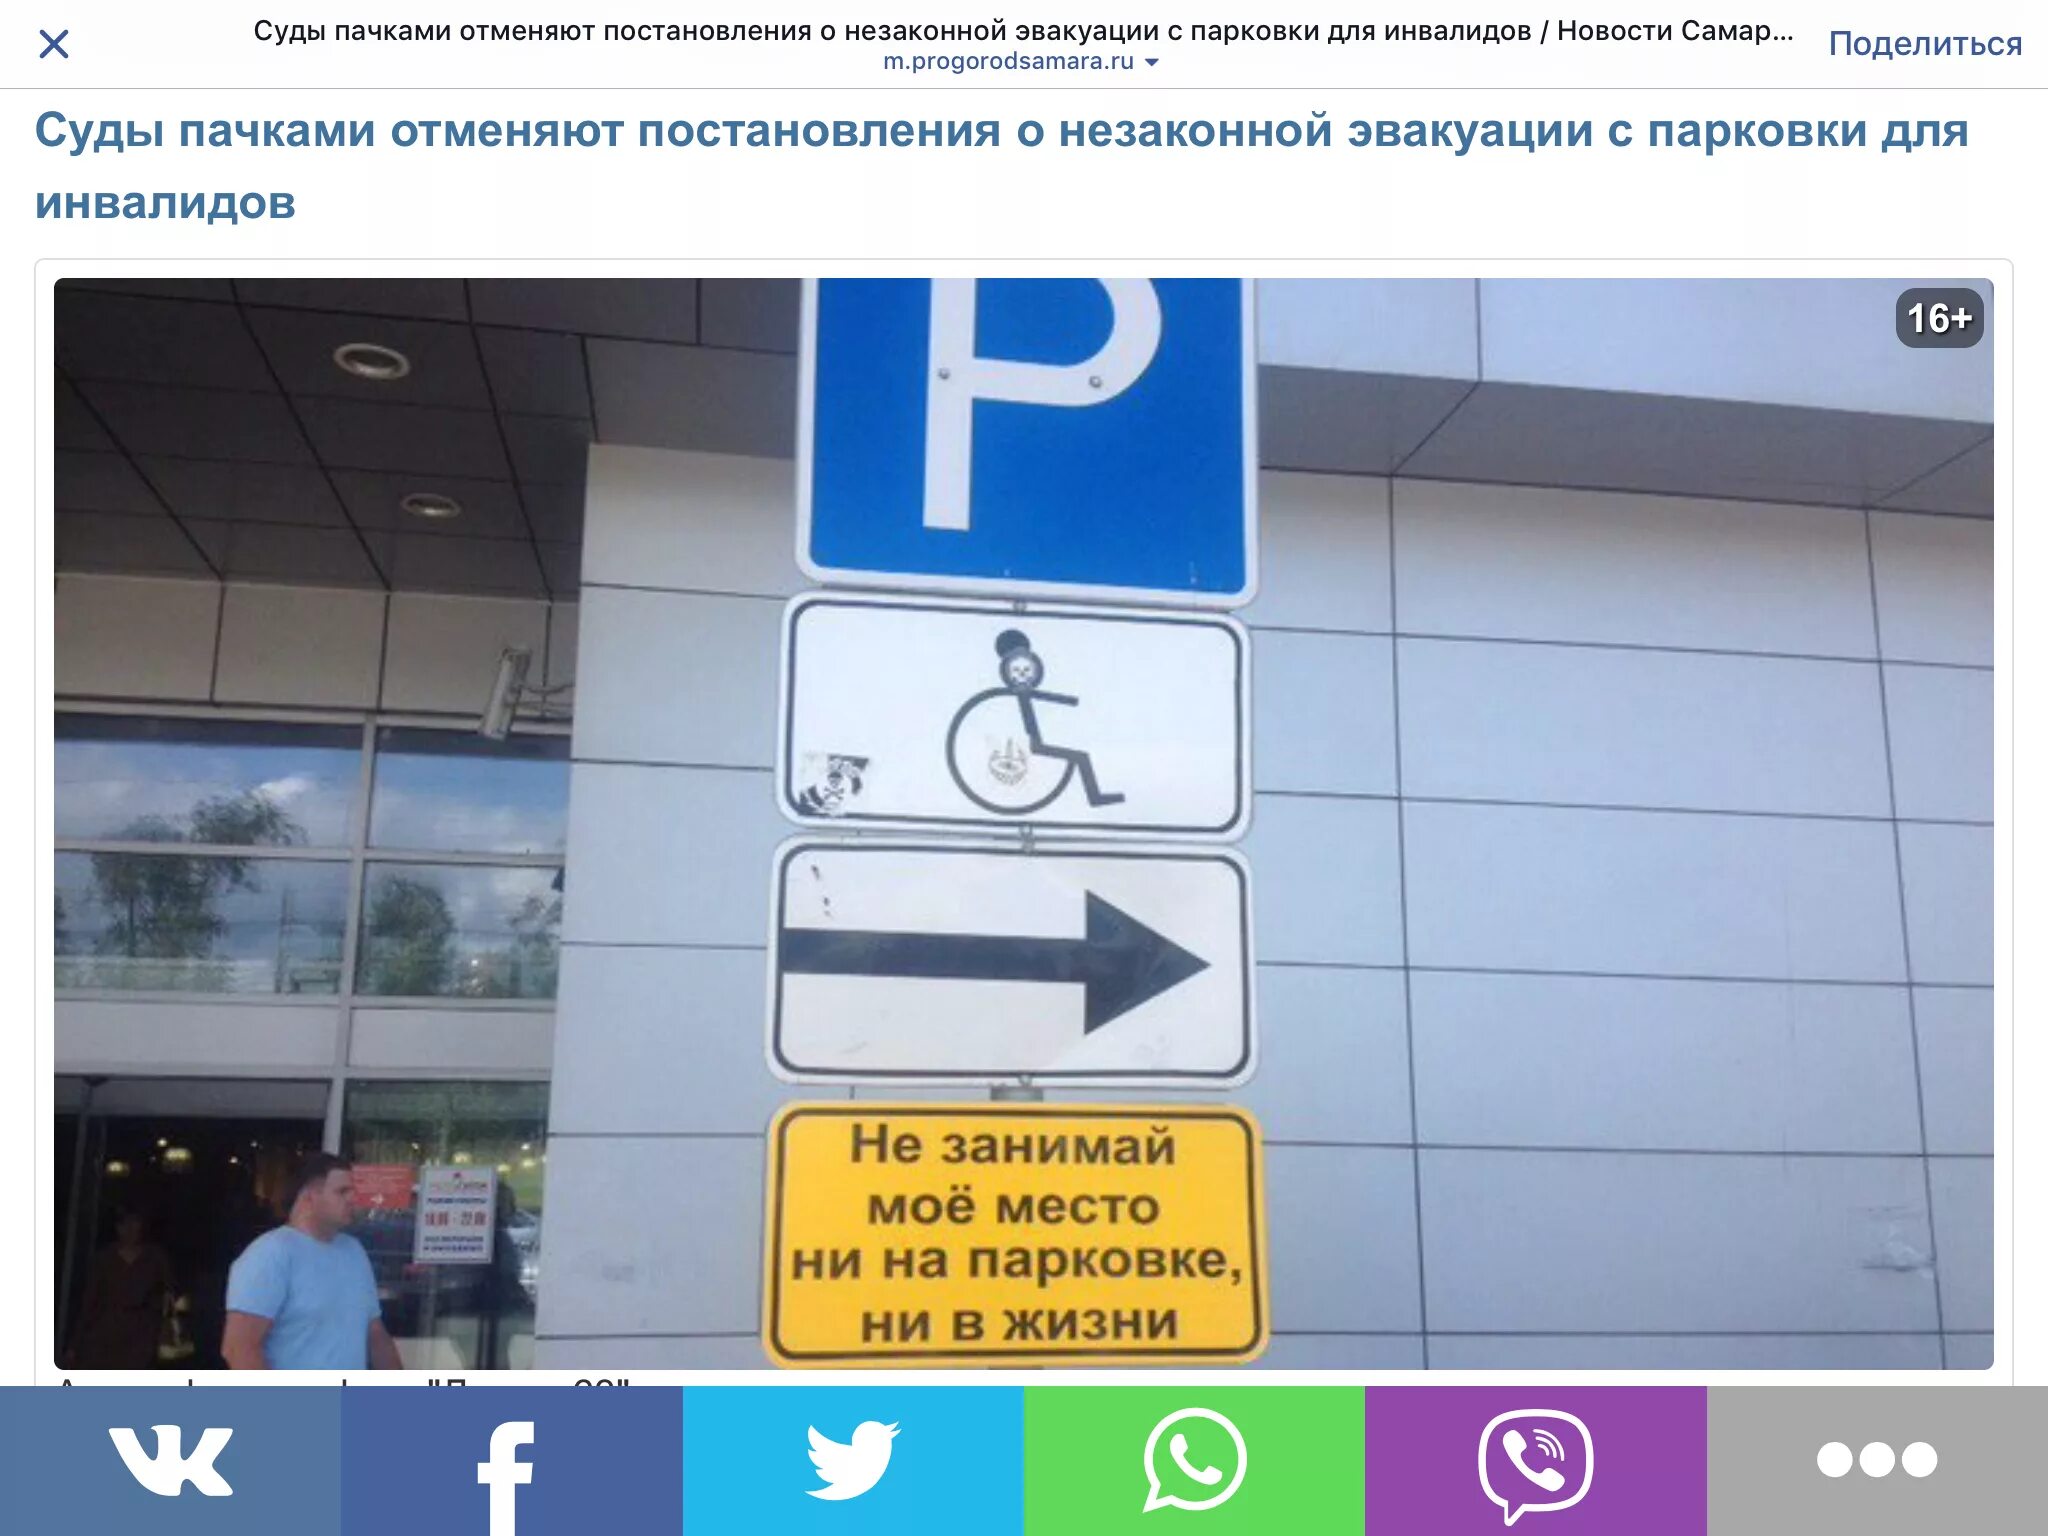 Сколько в аэропорту бесплатная стоянка. Пулково парковка для инвалидов. Парковка для инвалидов в Пулково знак. Парковка для инвалидов в аэропорту Пулково. Парковки для инвалидов аэропорт Шереметьево.